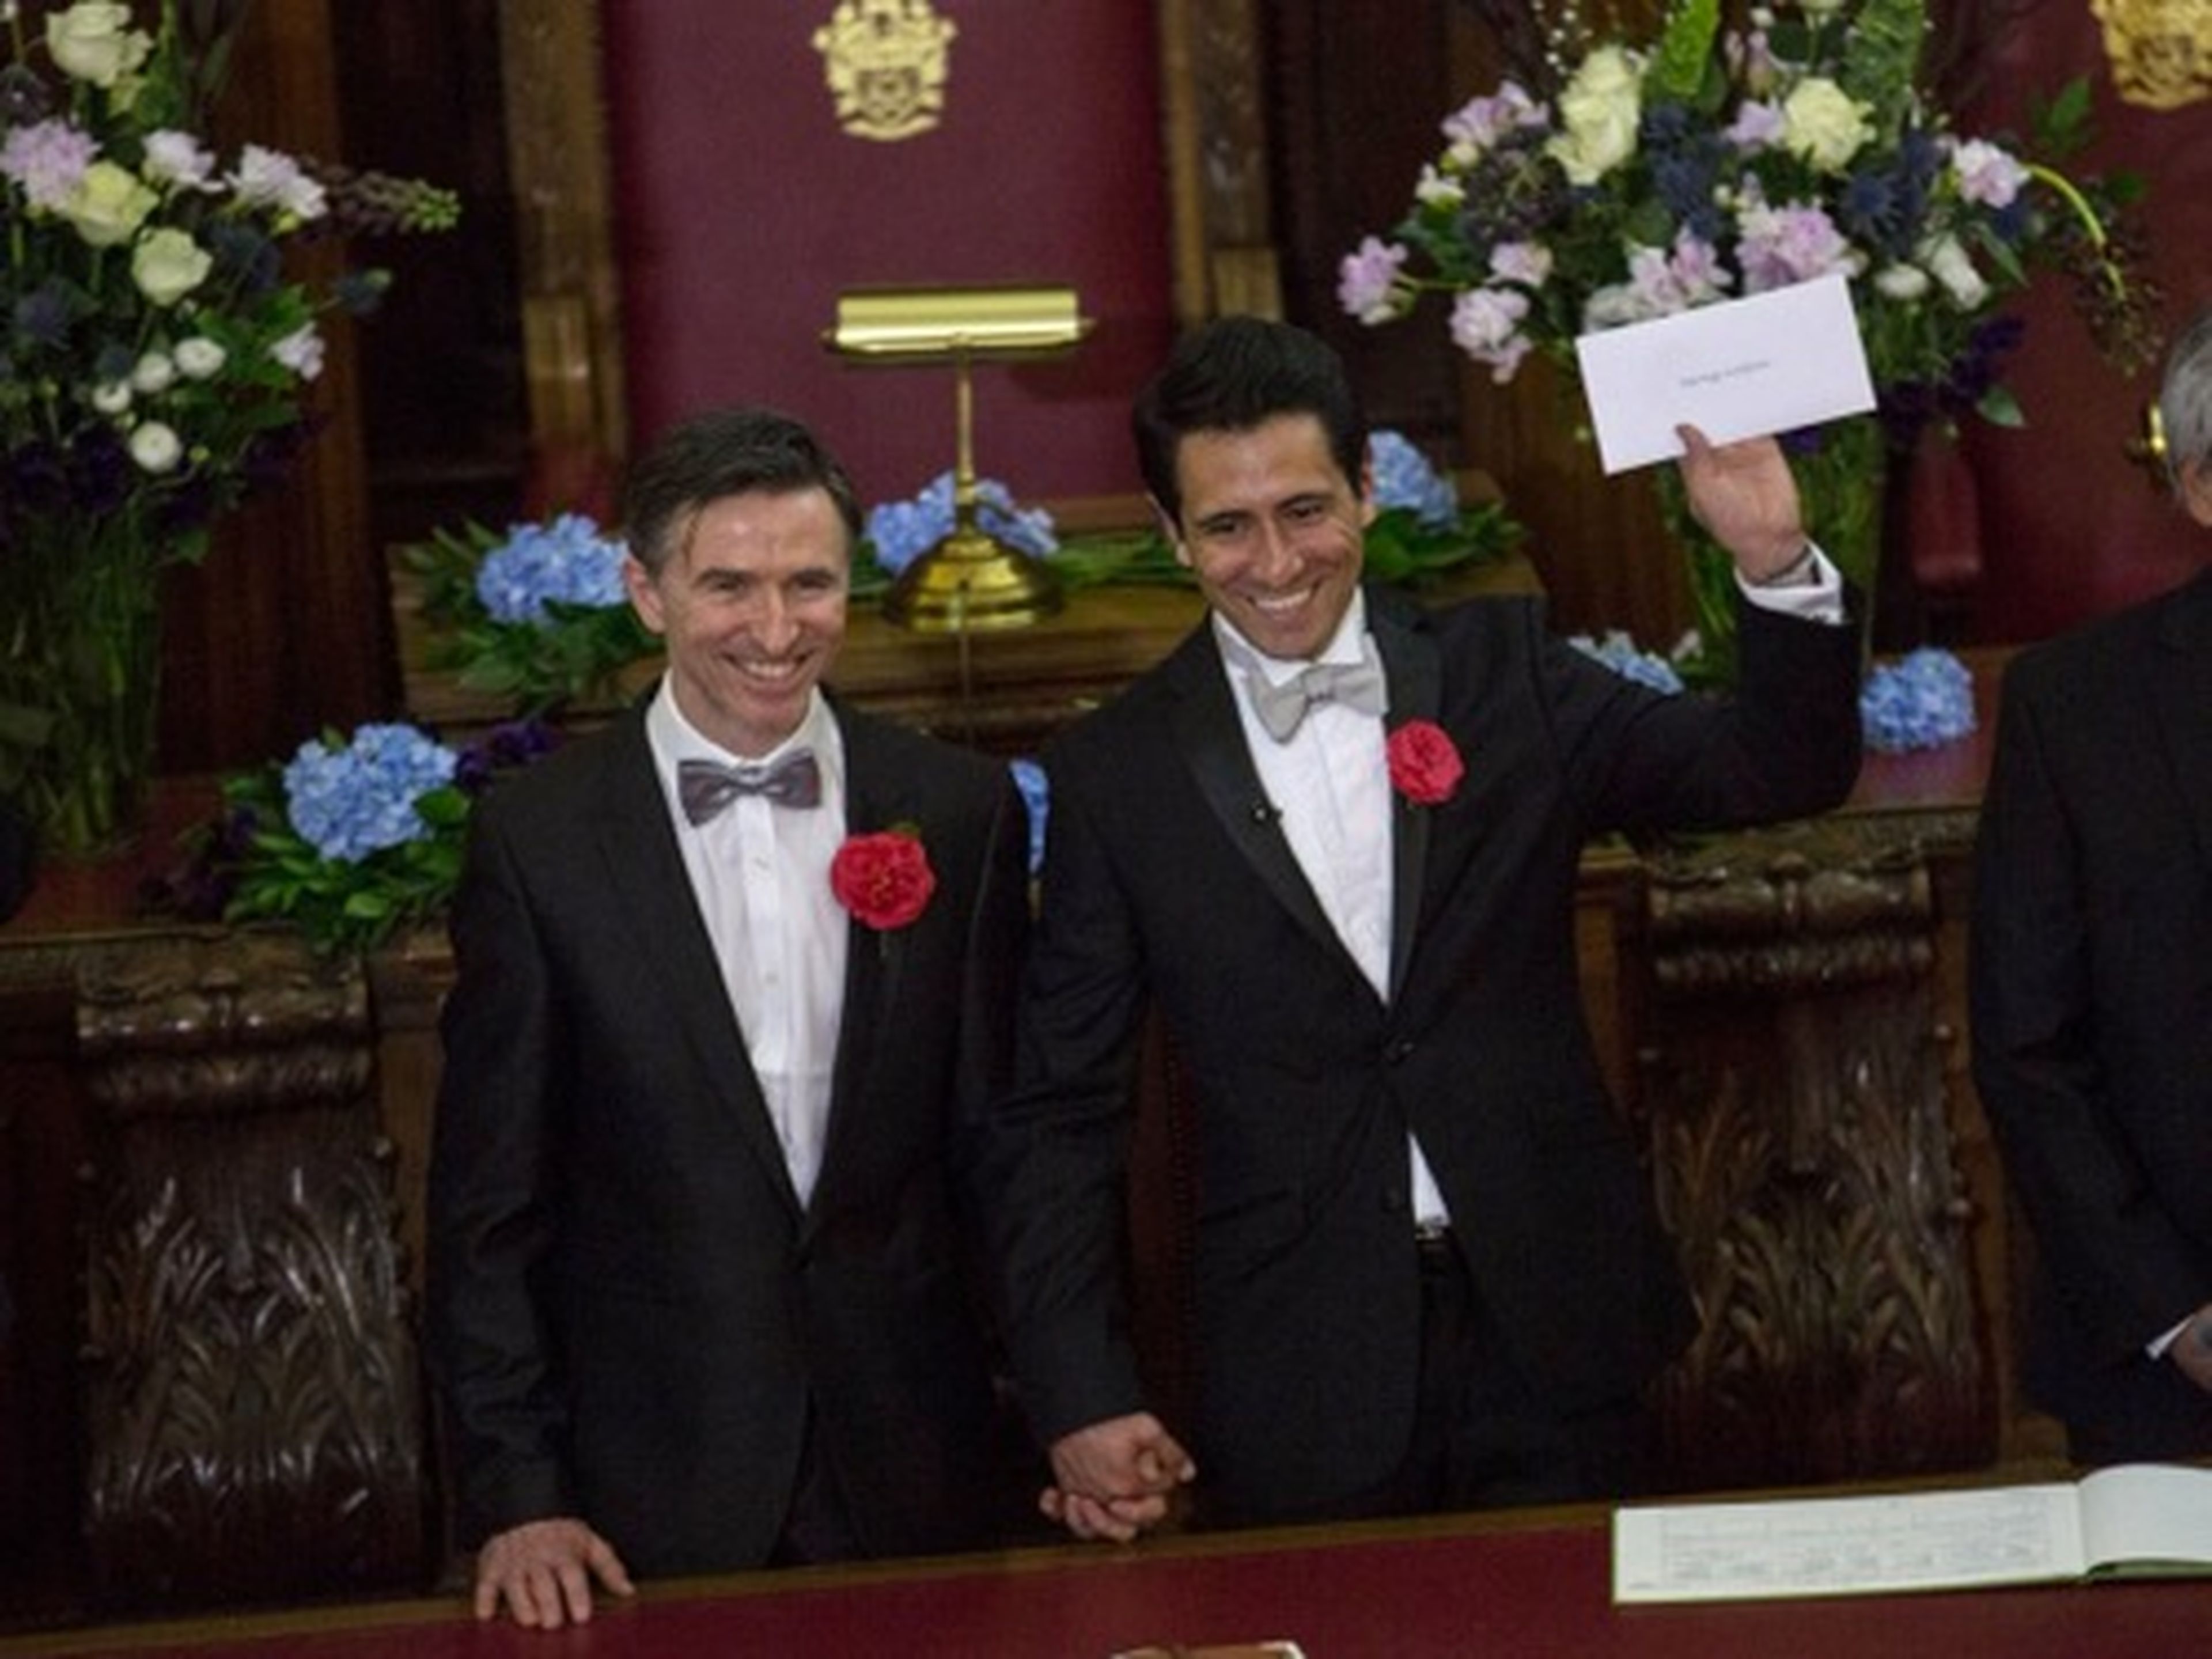 Peter McGraith y David Cabreza contrajeron matrimonio poco después de la medianoche en uno de los primeros matrimonios entre personas del mismo sexo de Reino Unido, el 29 de marzo de.